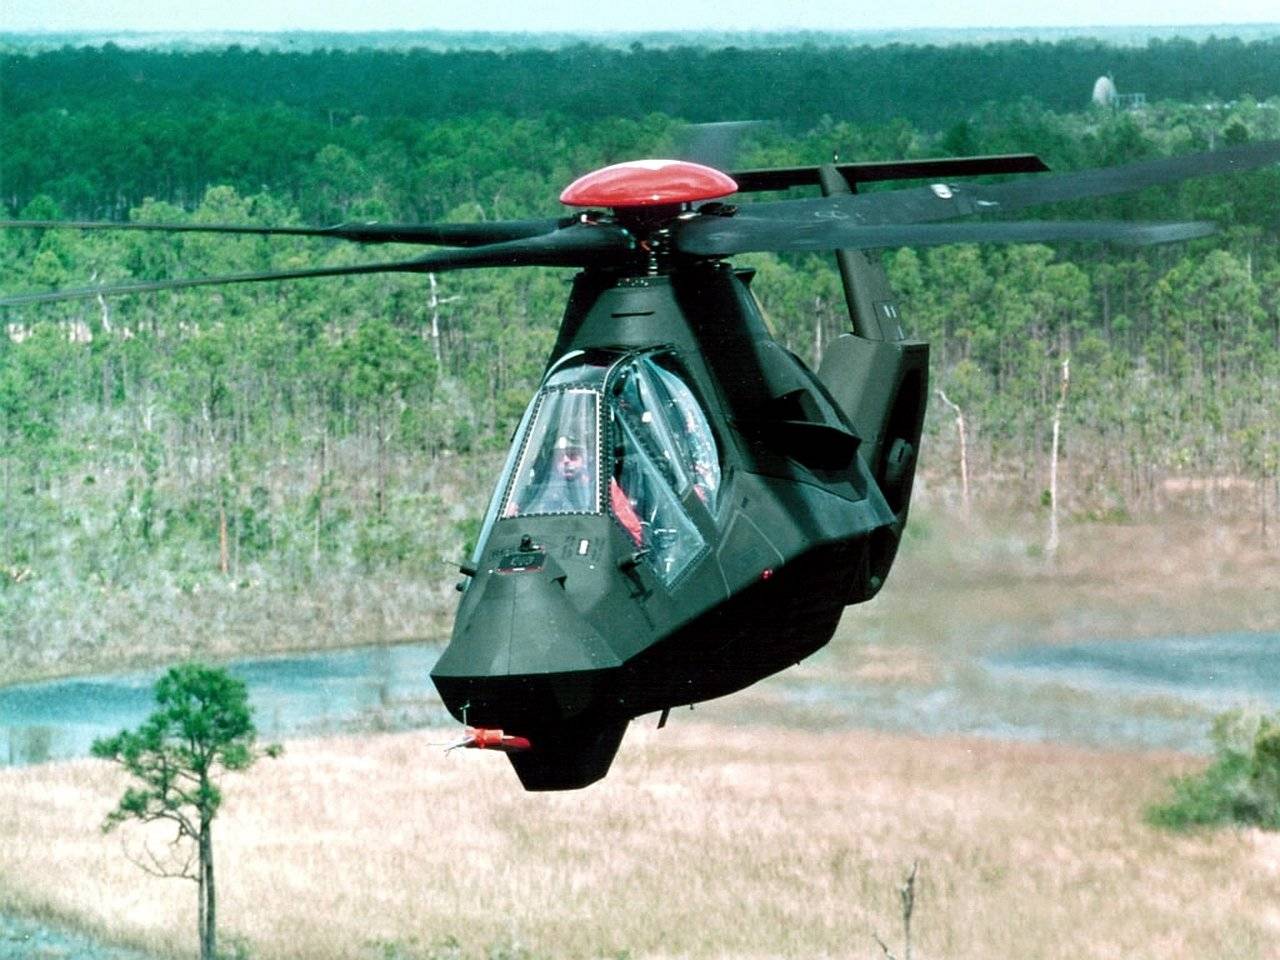 Вертолёт команч: boeing sikorsky rah 66 comanche, история создания, конструкция, технические характеристики